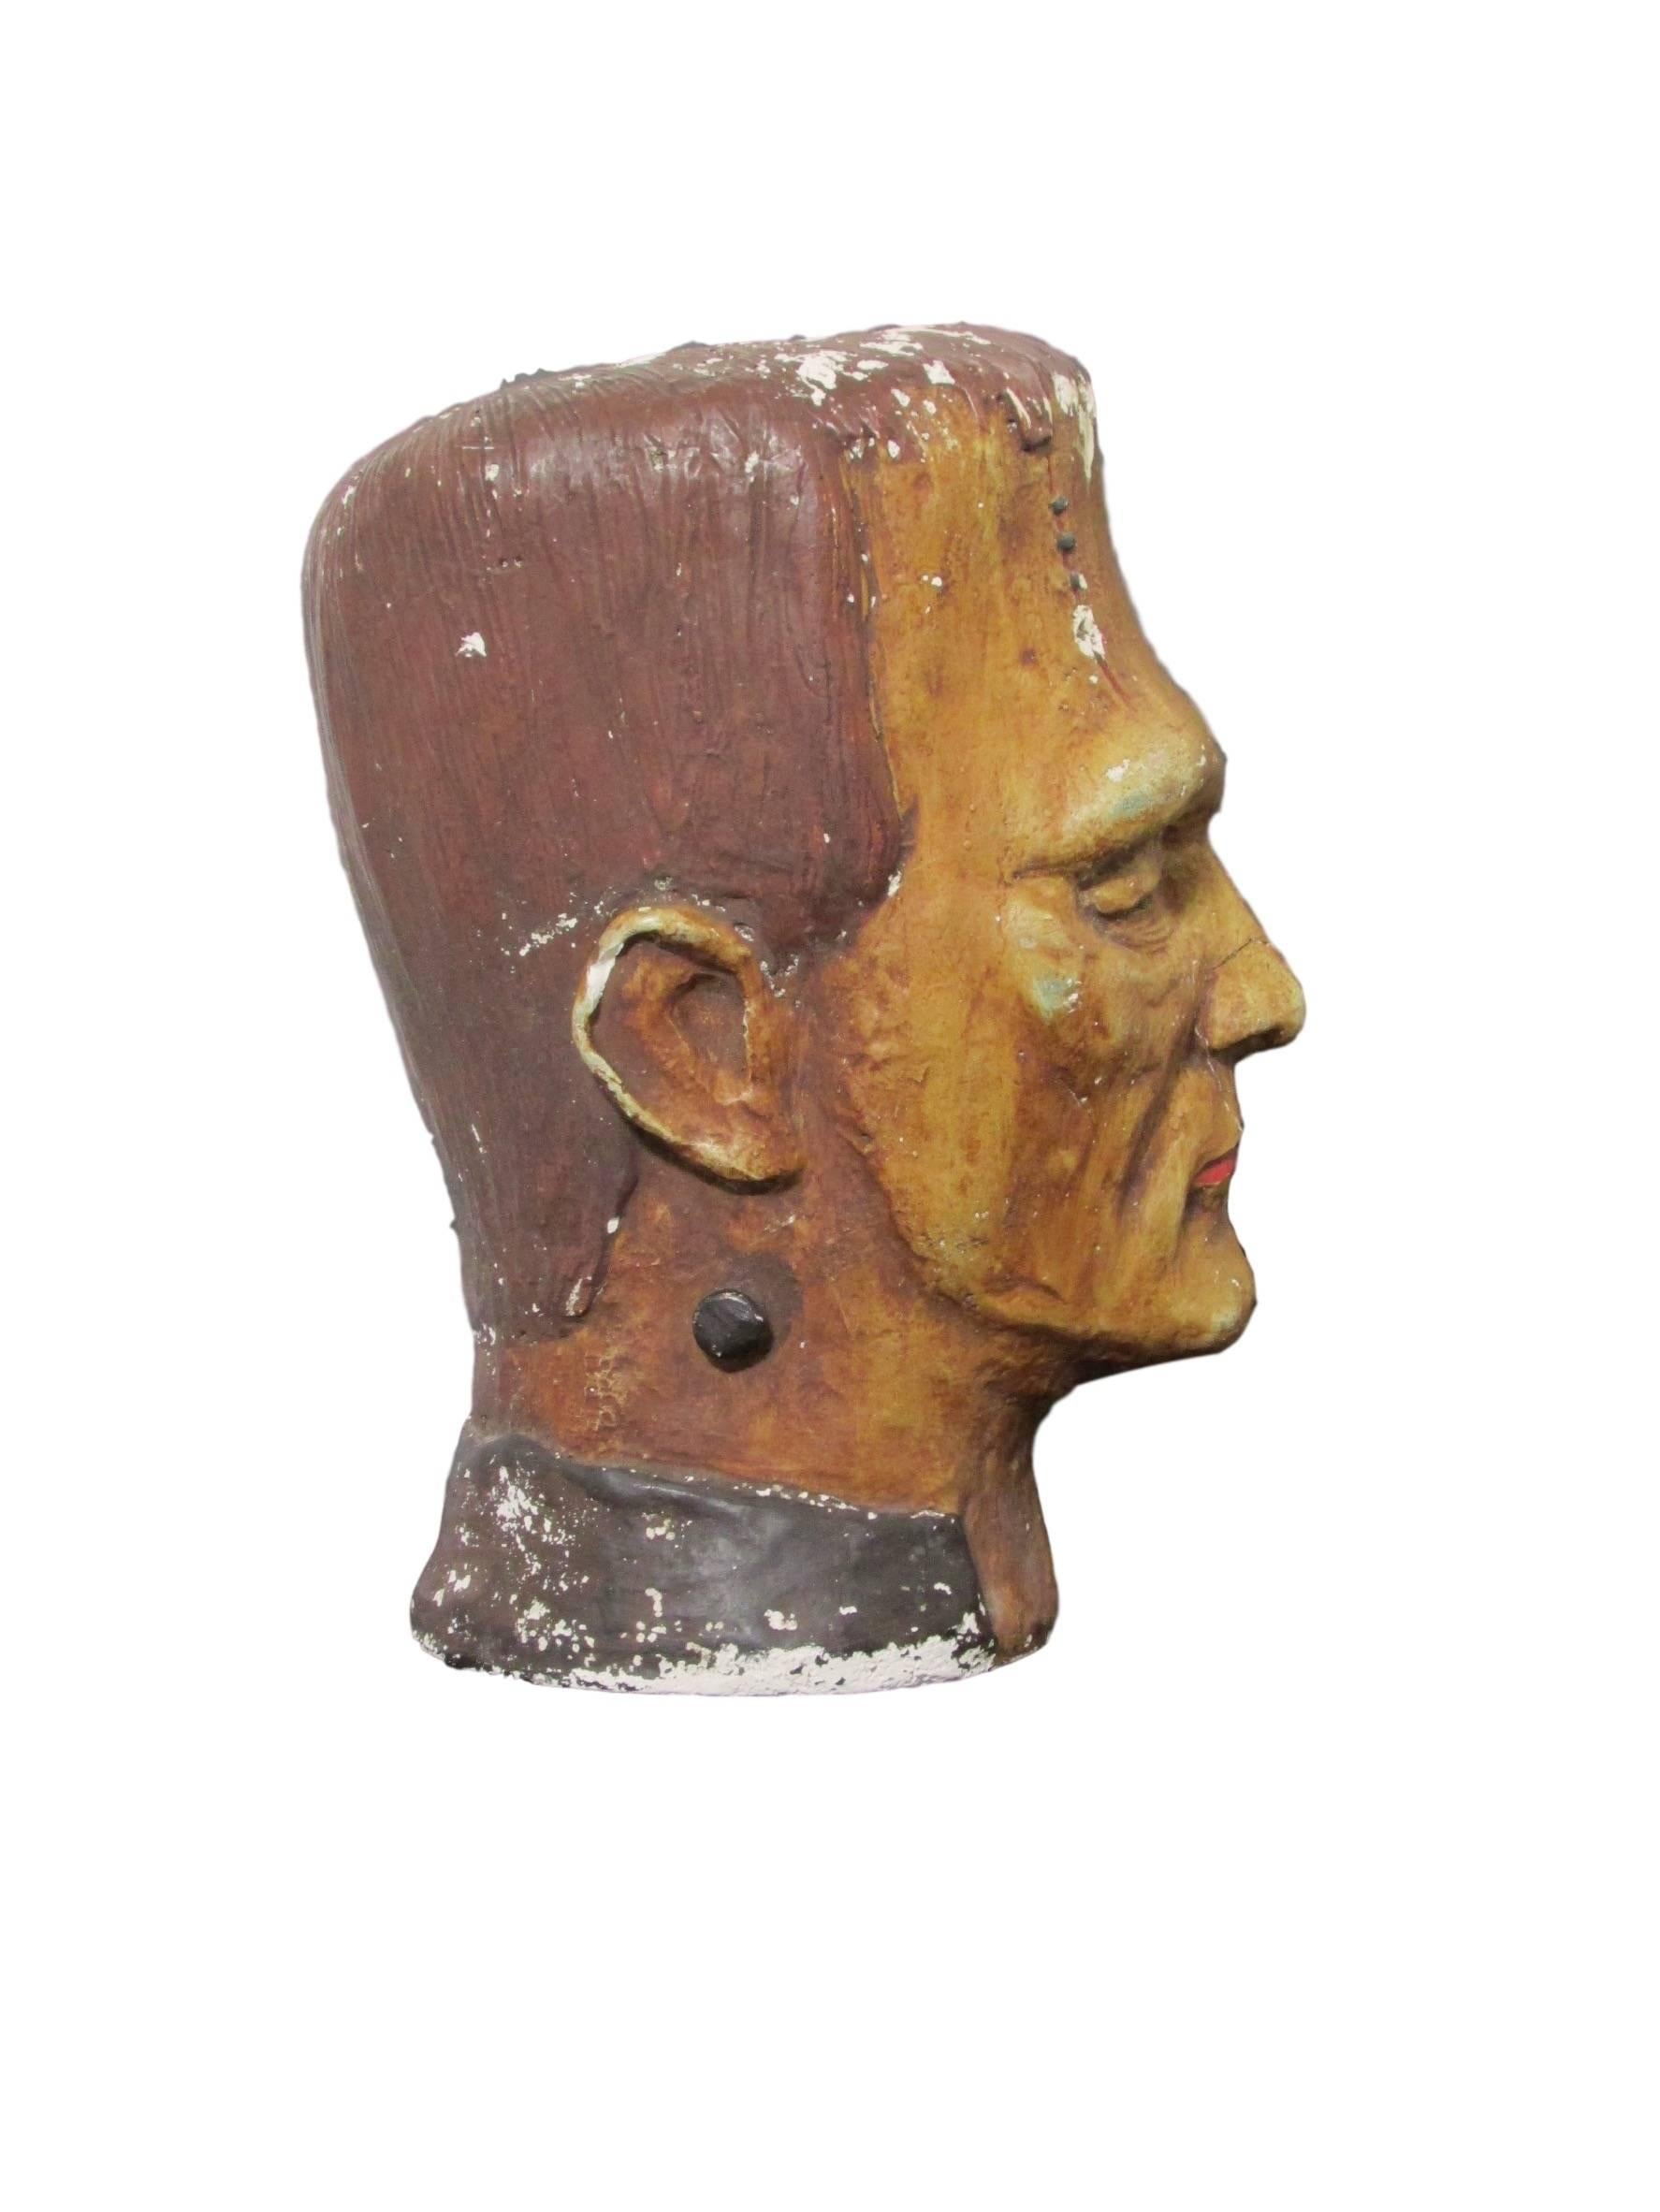 Molded Chalkware Frankenstein Bust, circa 1930